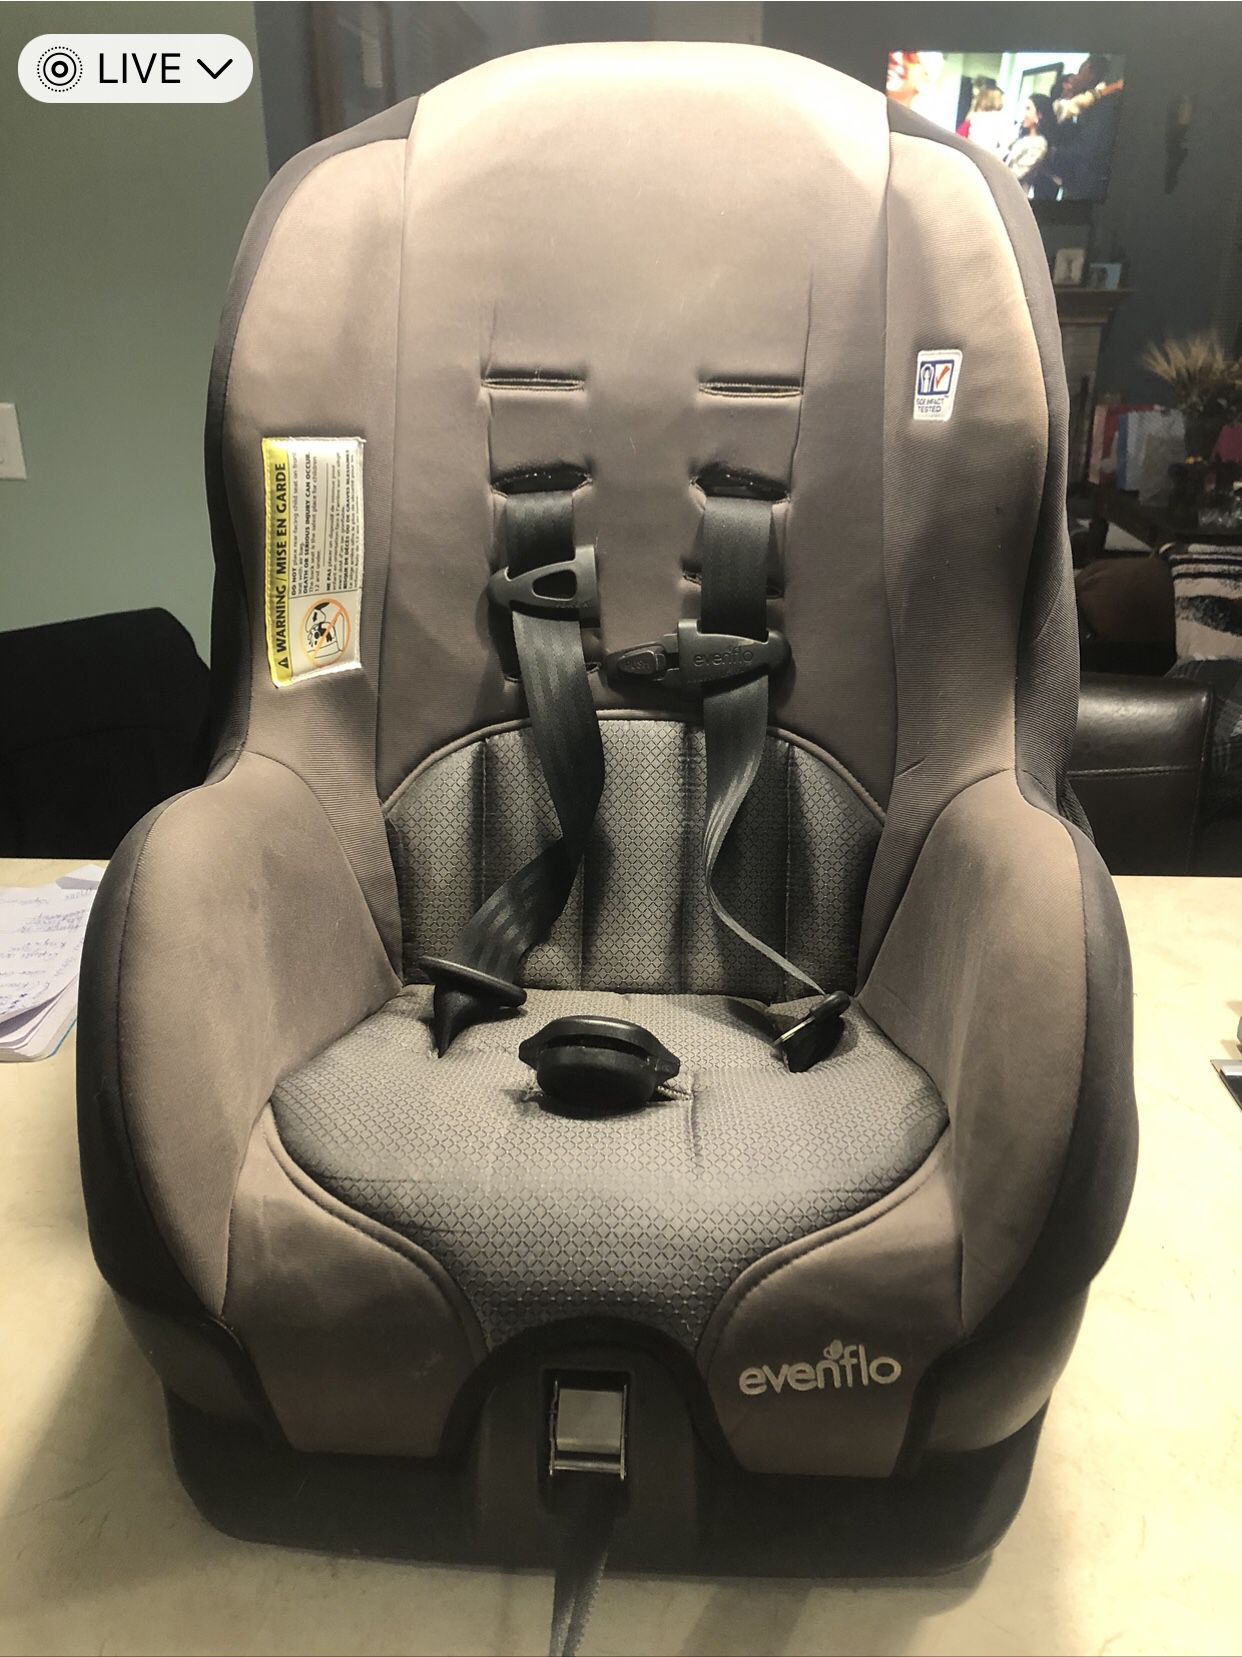 Evenflo Infant/Toddler Car Seat